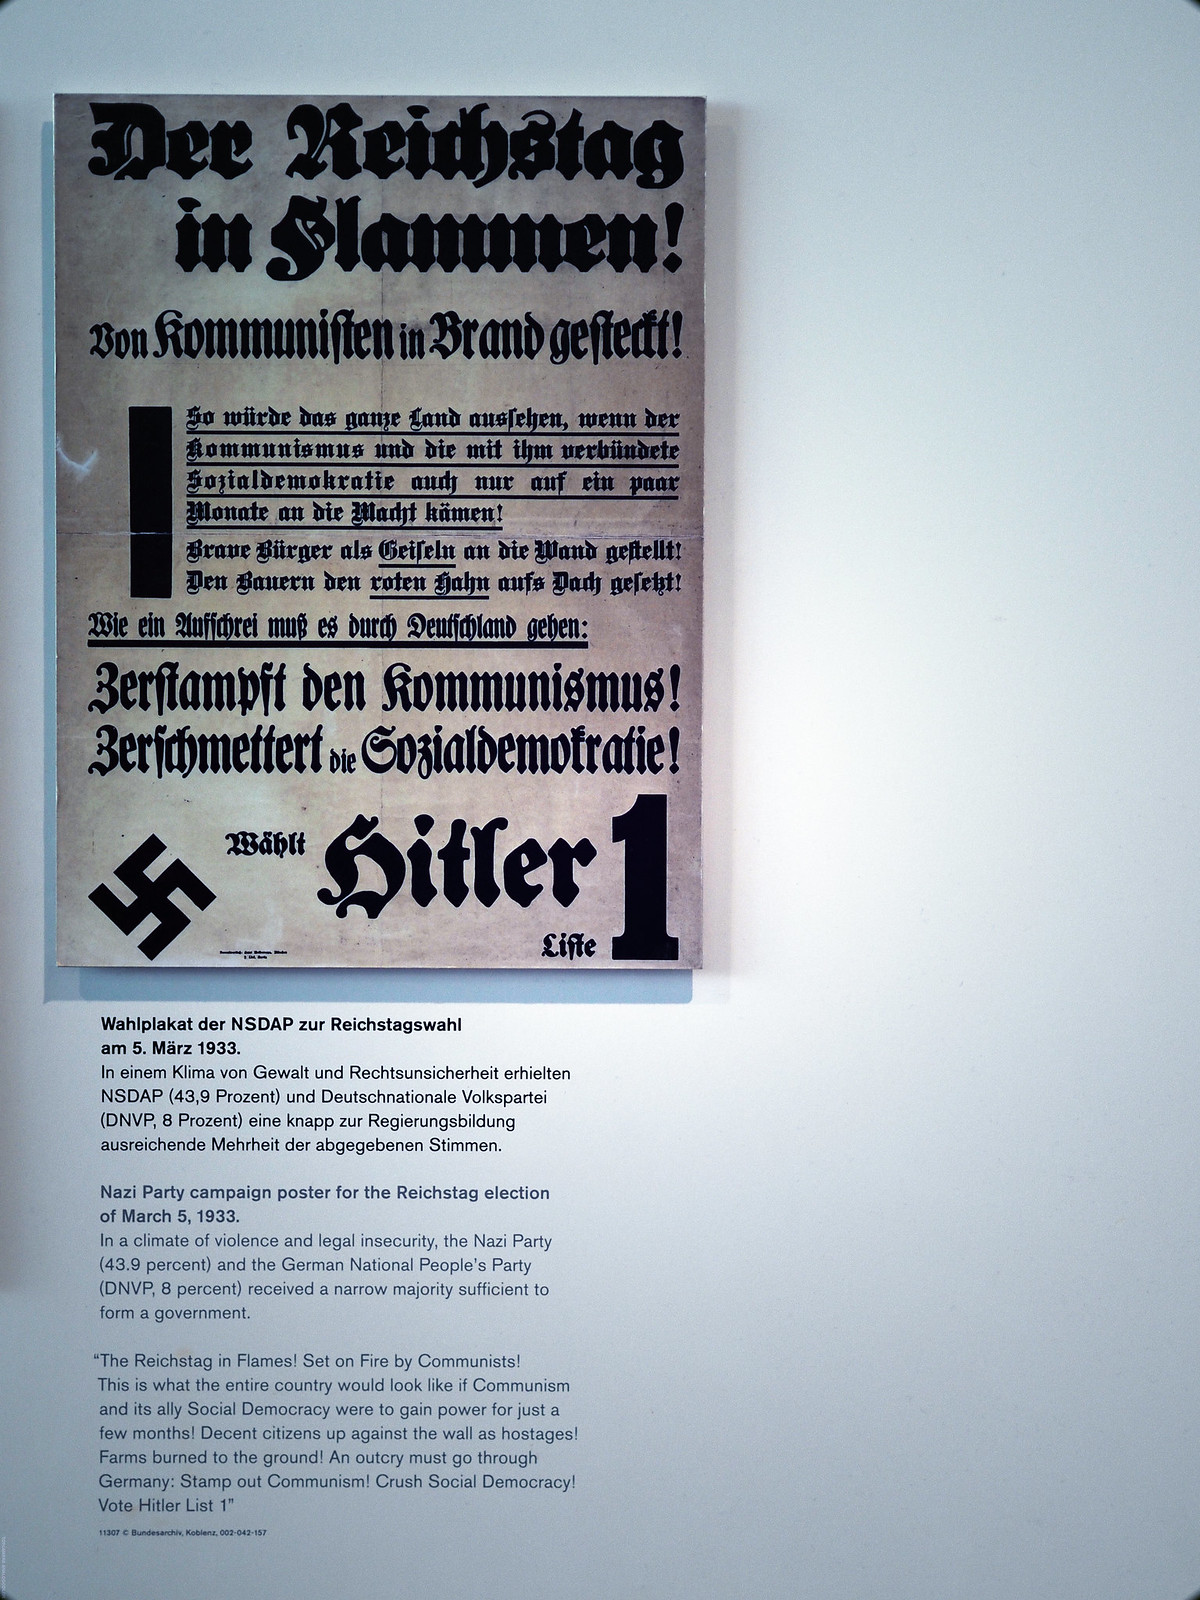 Topography of Terror Nazi Poster Berlin_effected-001